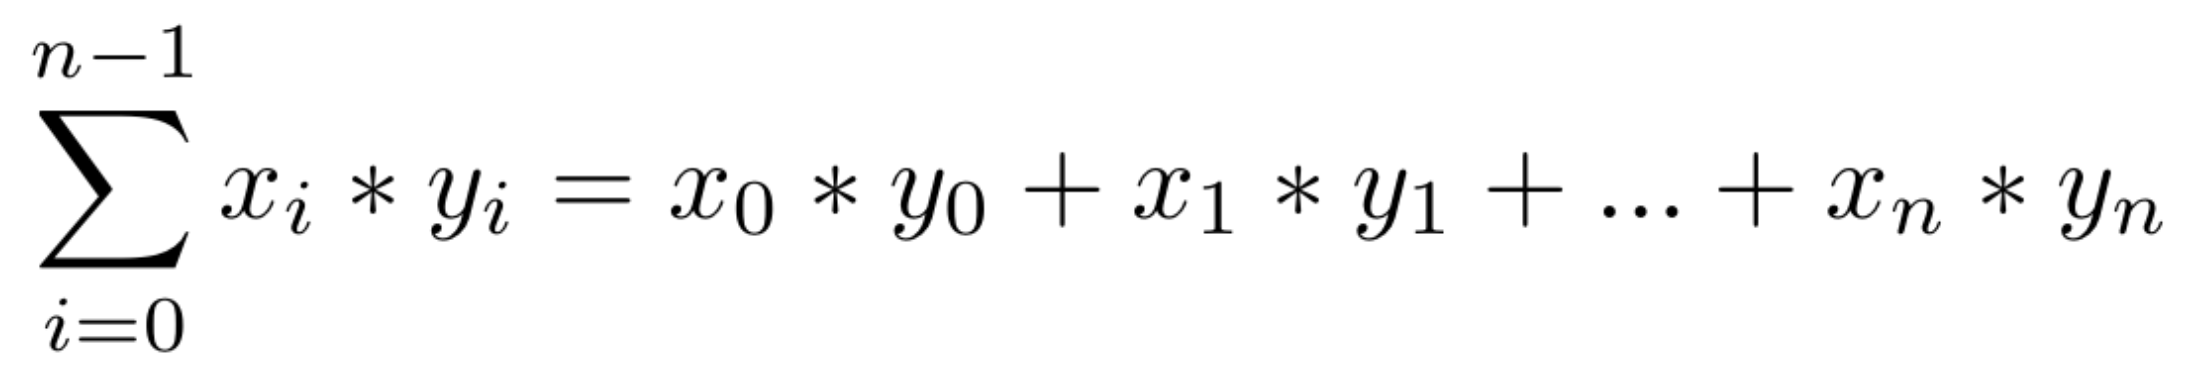 Equação do produto escalar de dois vetores.